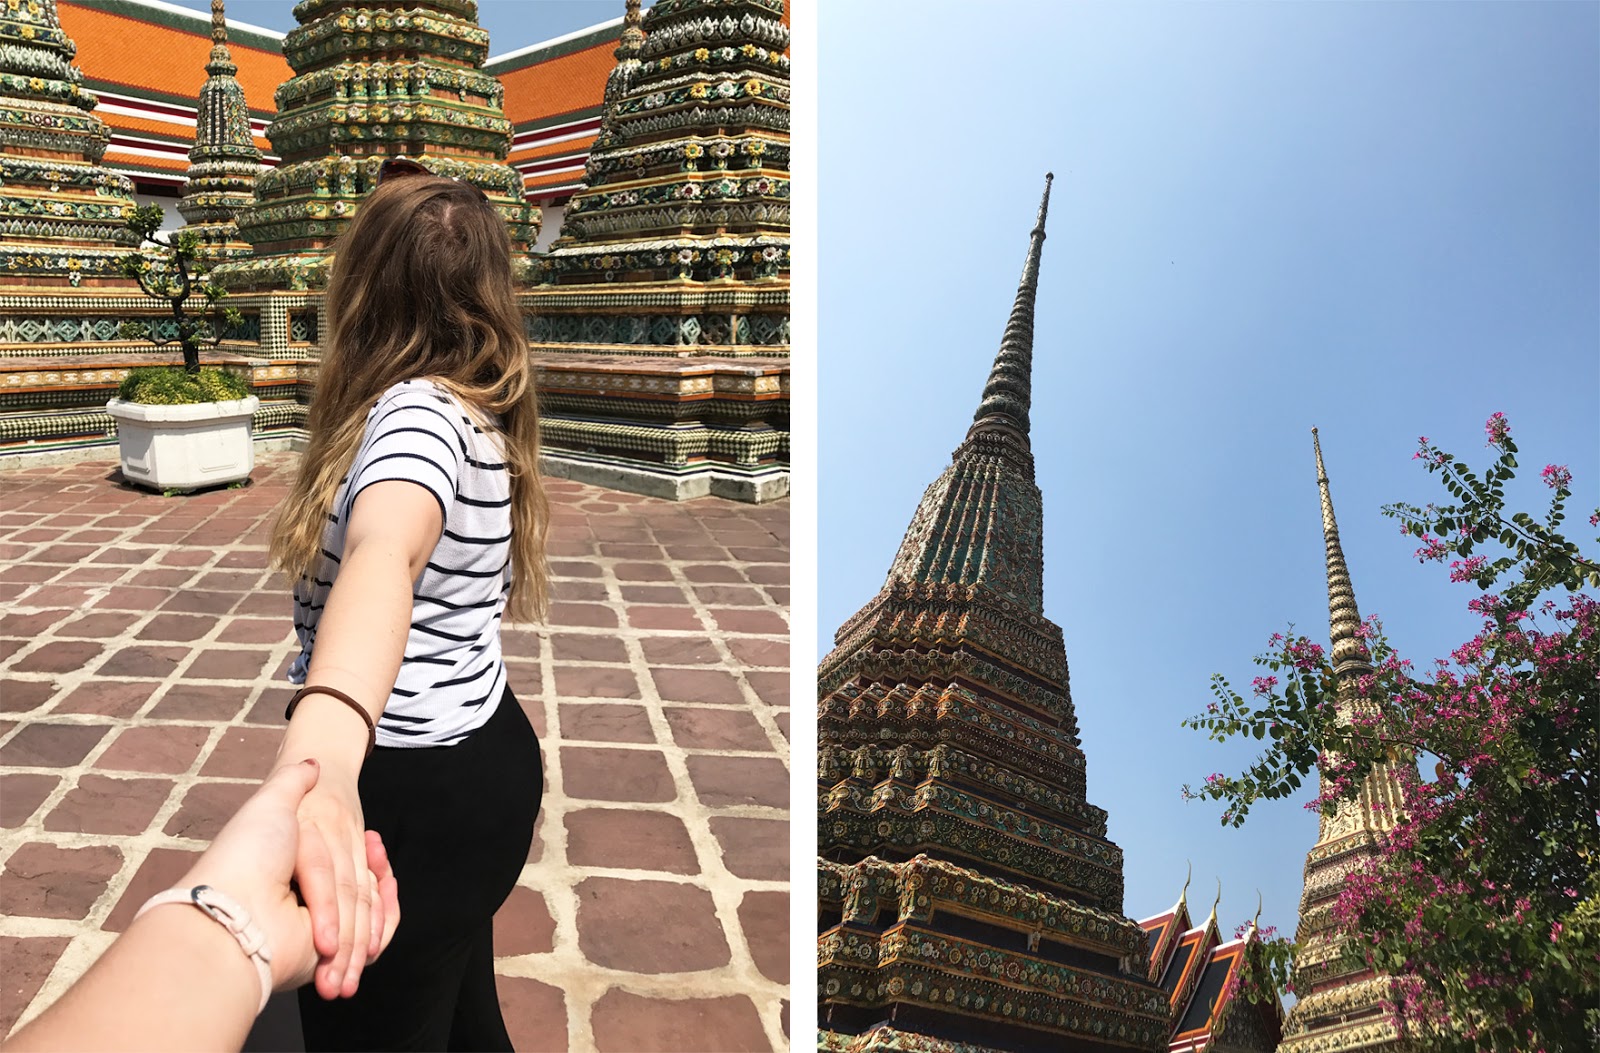 Wat Arun Thailand